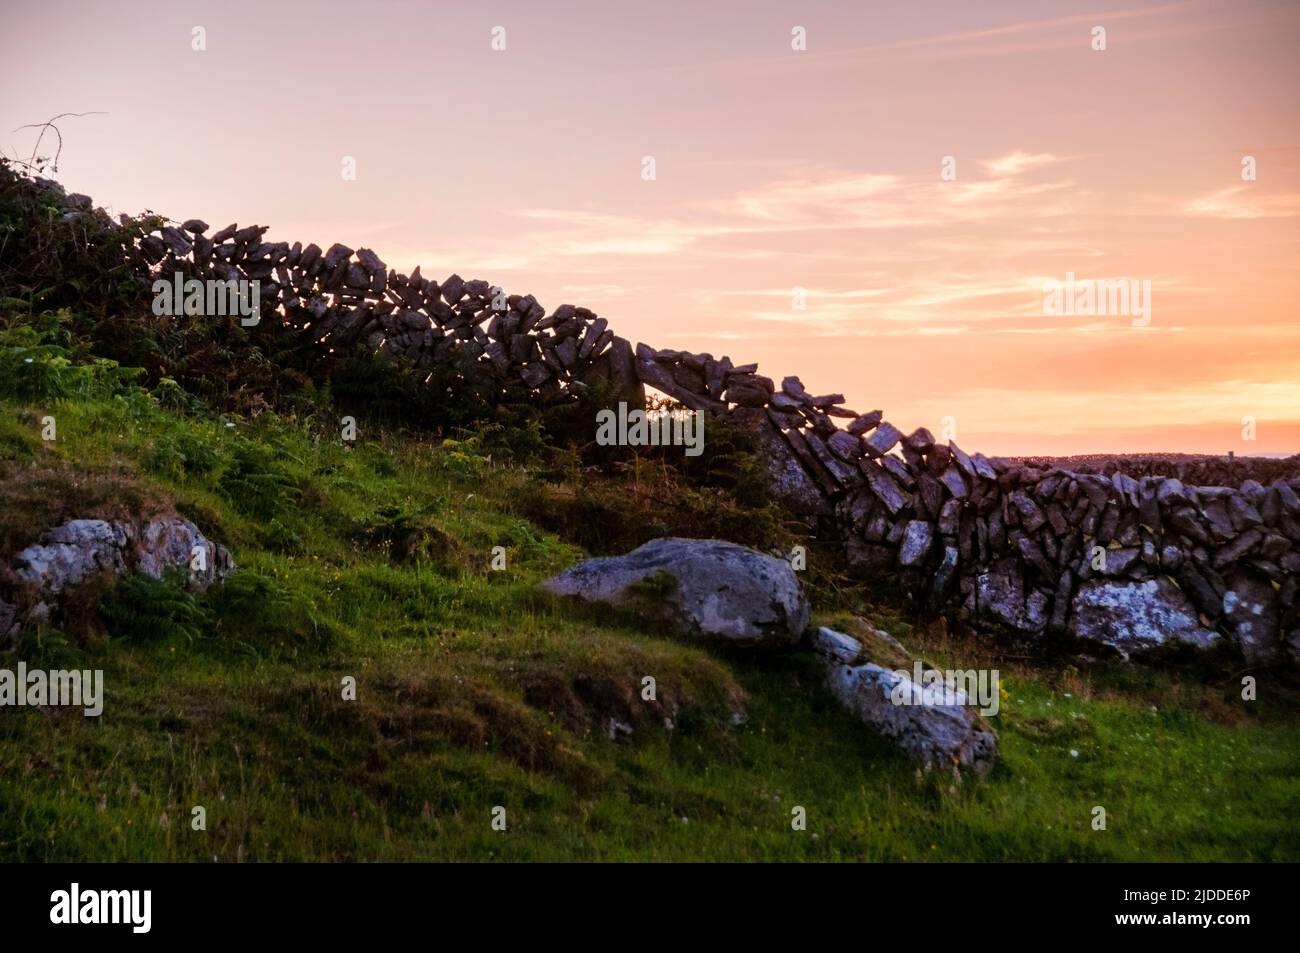 Des murs de pierre ont été silhouetés contre un coucher de soleil à la fin de l'été sur l'île d'Aran à Inishmore dans la baie de Galway, en Irlande. Banque D'Images